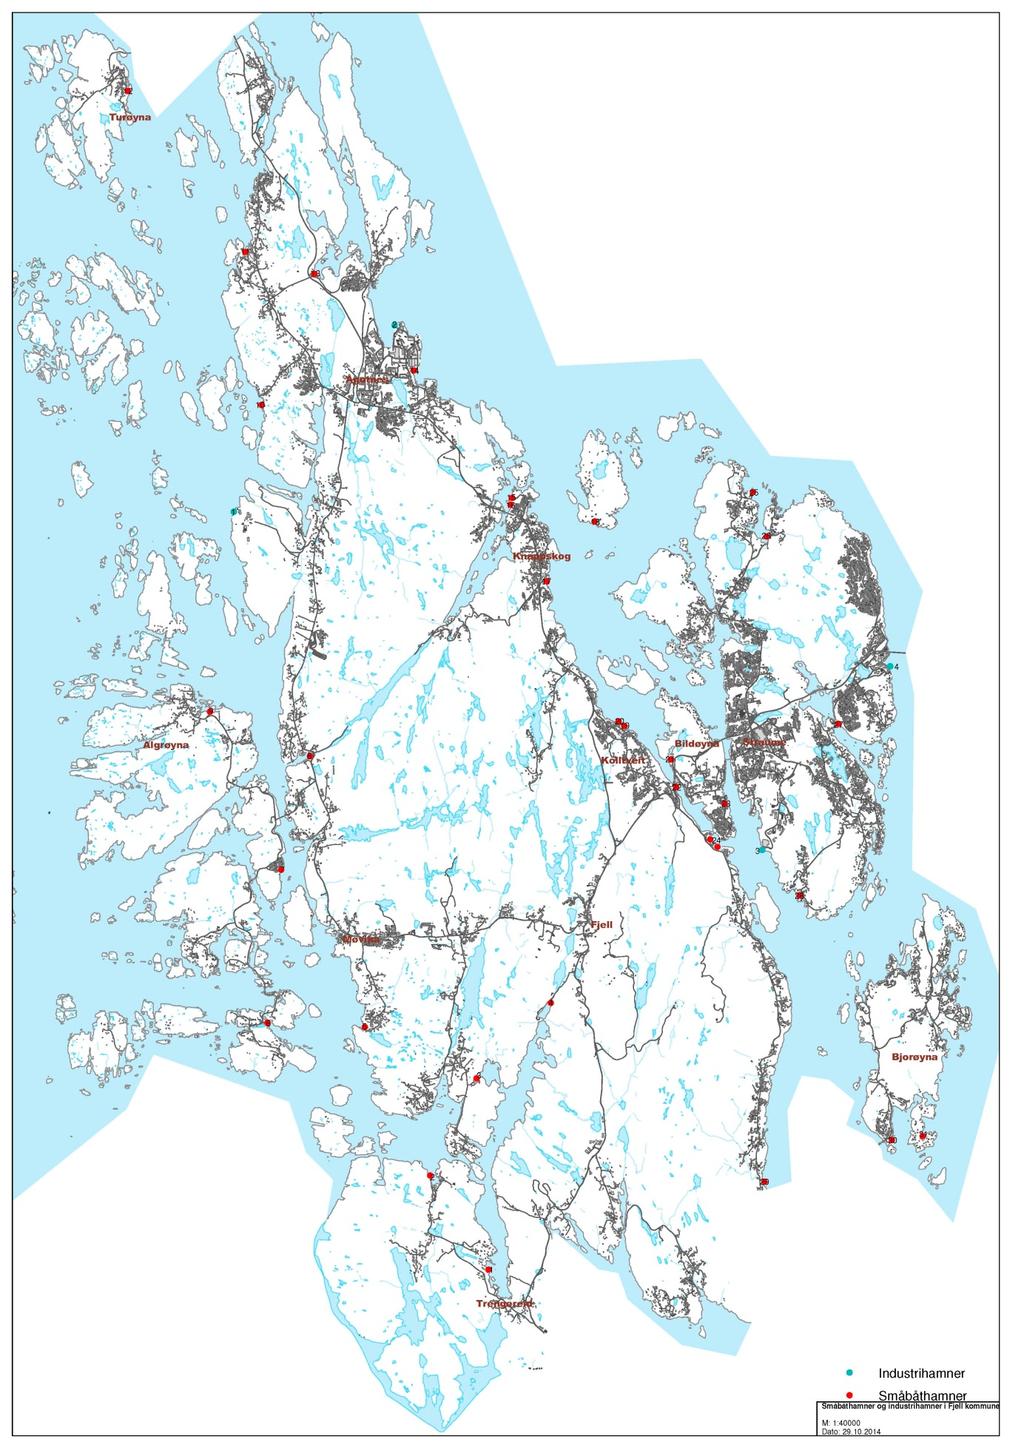 Vedlegg 2: Kart over småbåthamner